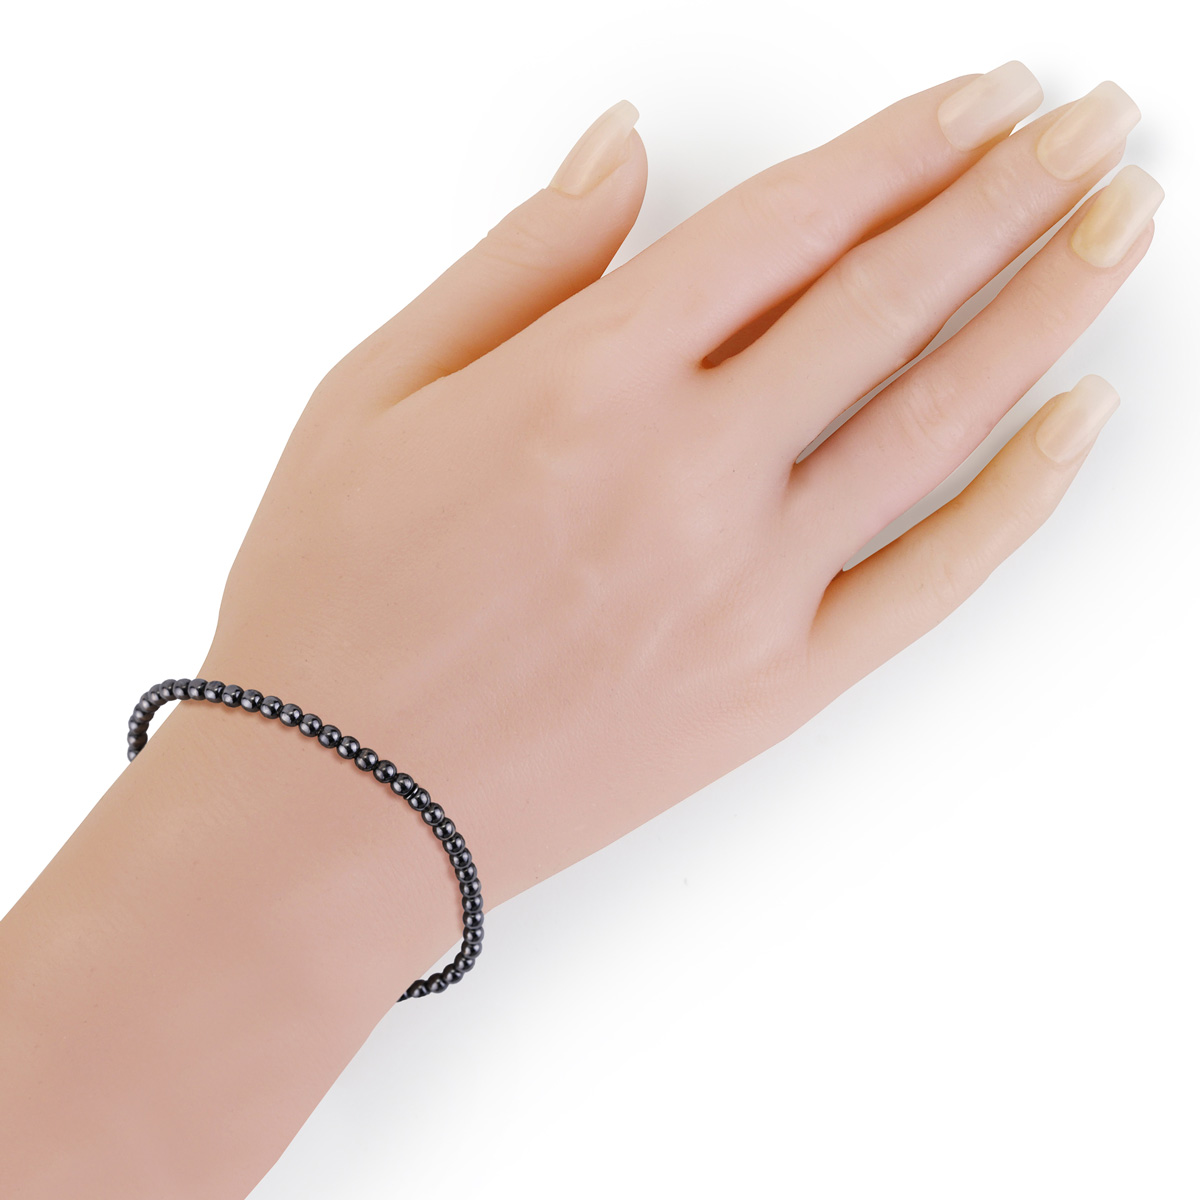 18k White Gold Bead Bracelet - Women and Men's Bracelet - 4mm